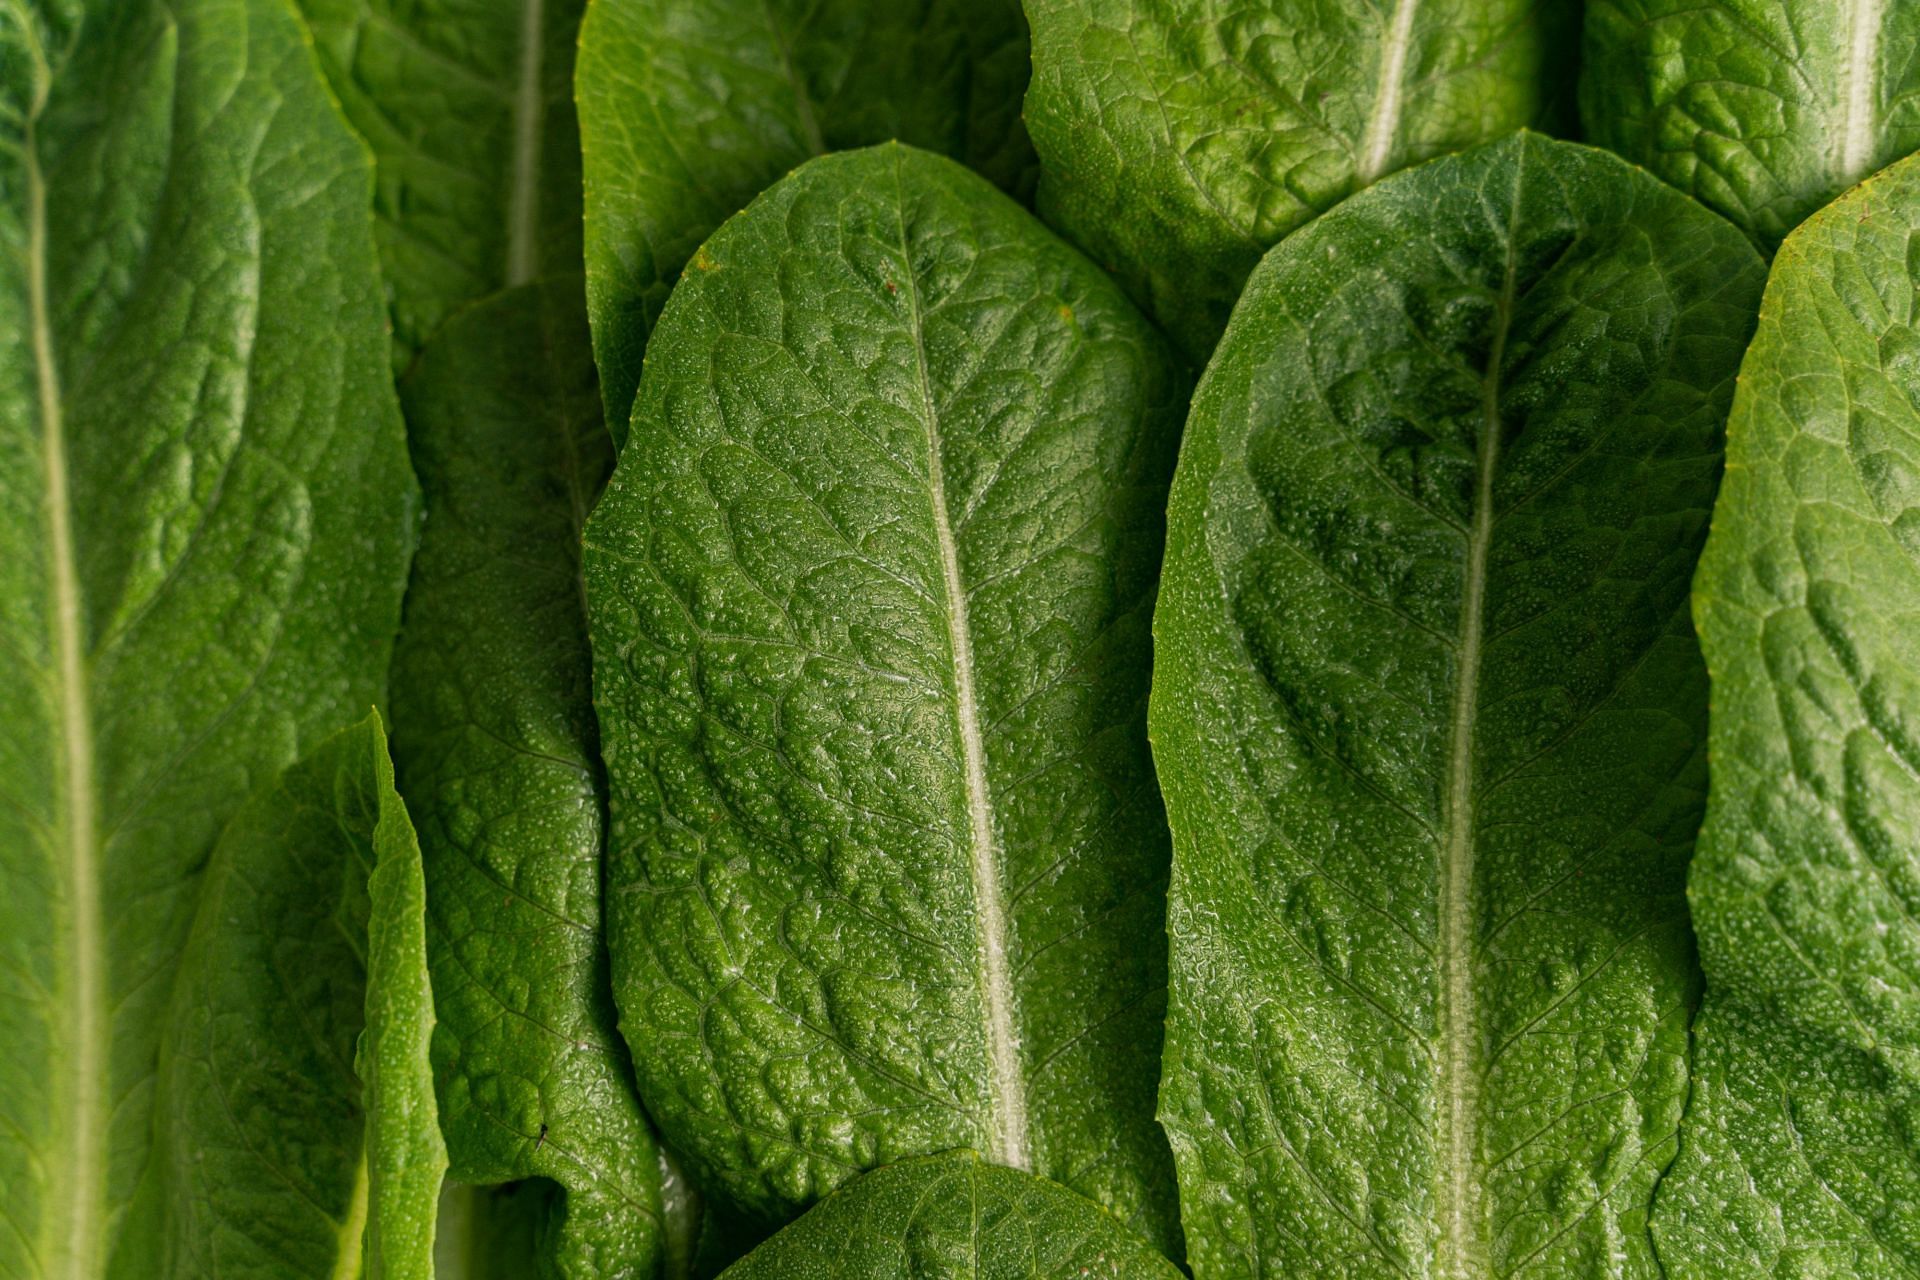 Vitamin K2 is found in leafy vegetables (Image via Pexels/Antoni Shkraba)